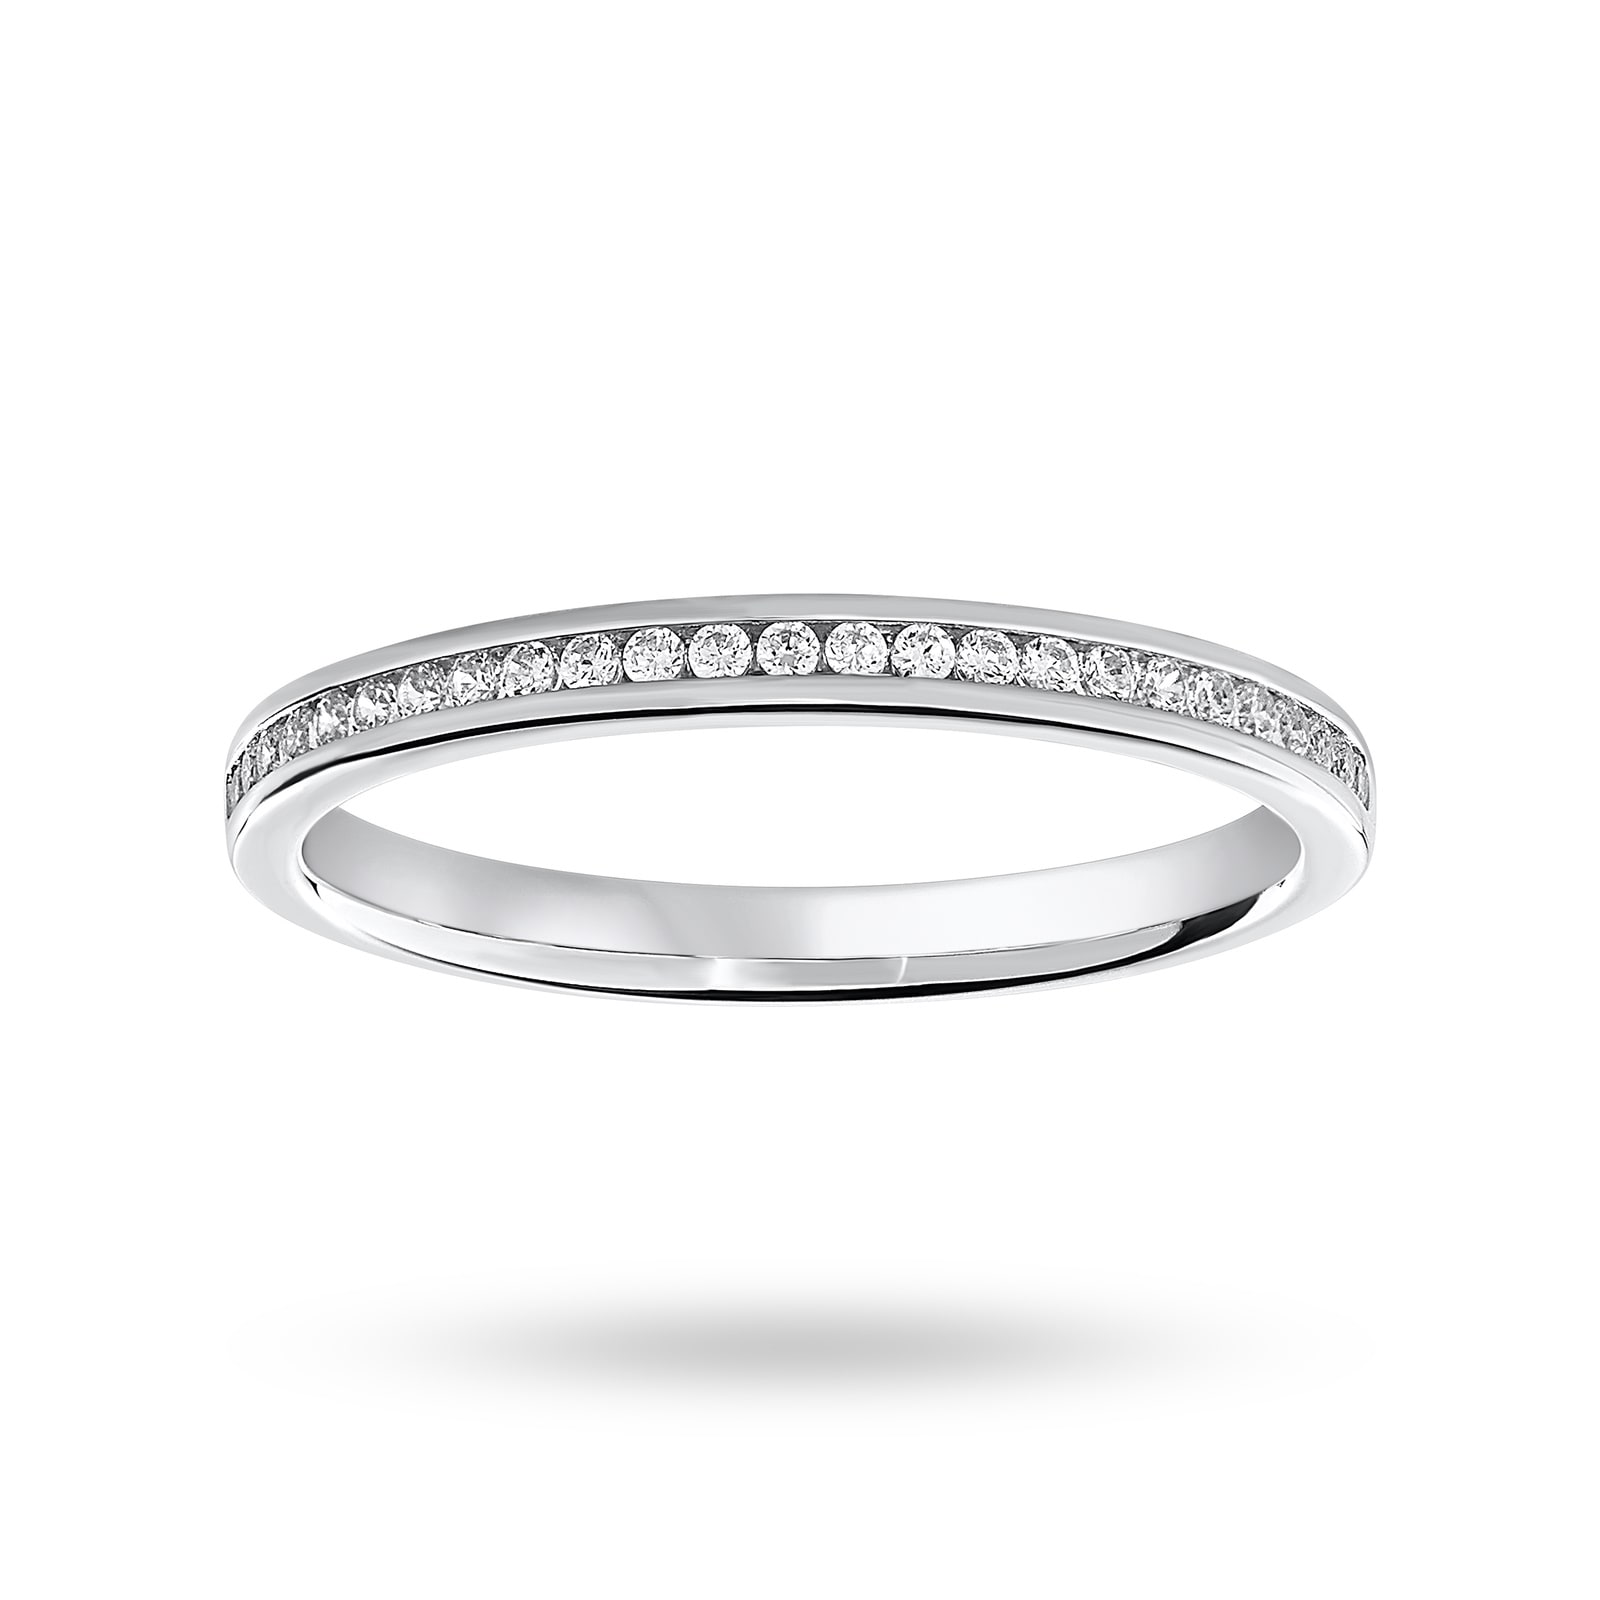 Platinum 012 Carat Brilliant Cut Half Eternity Ring Ring Size L